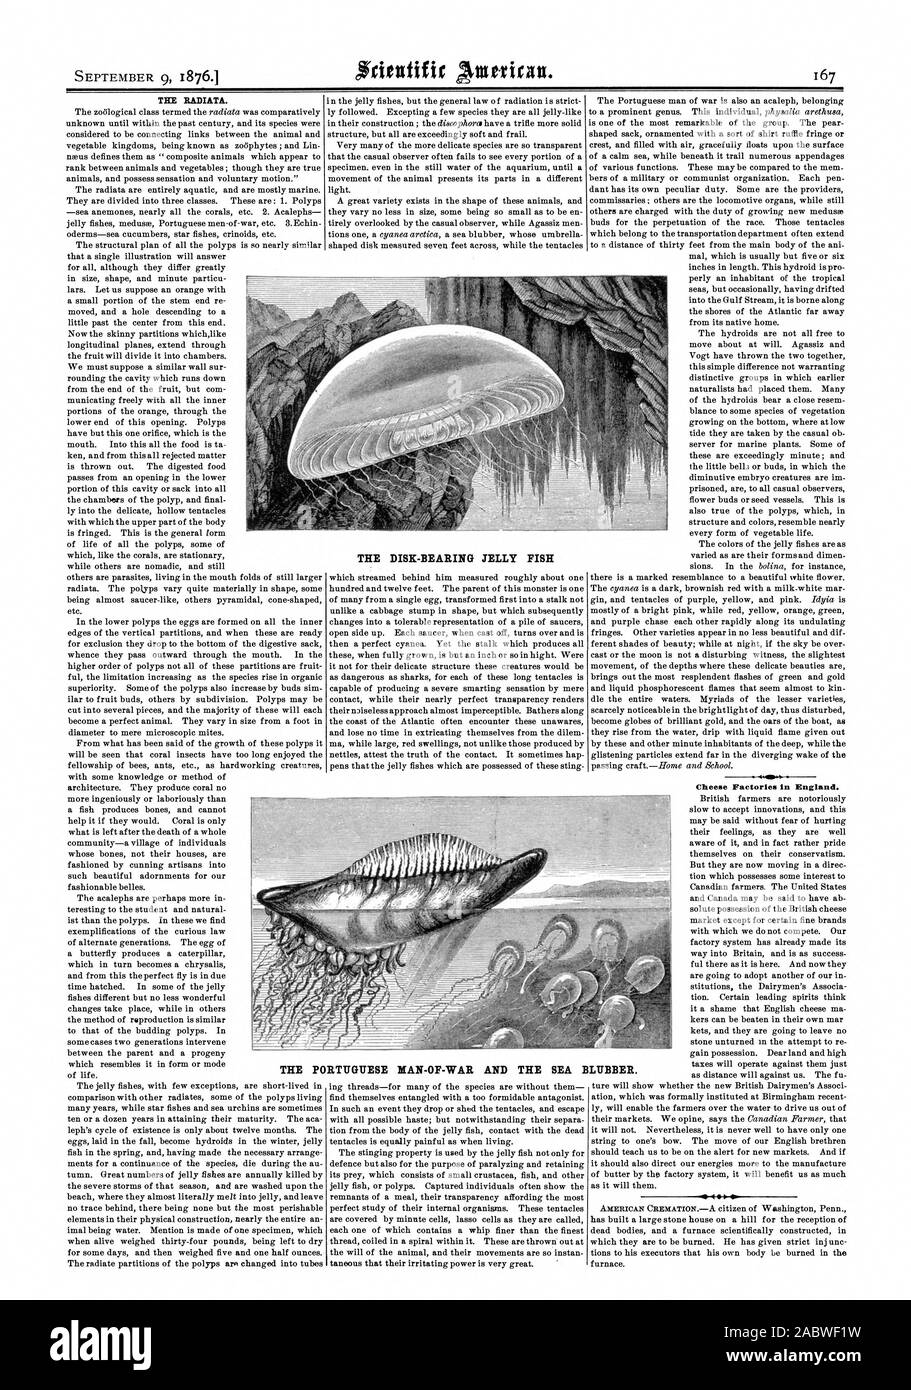 Caseifici in Inghilterra. S 400 il disco-cuscinetto JELLY FISH IL PORTOGHESE UOMO DI GUERRA E DI MARE BLUBBER., Scientific American, 76-09-09 Foto Stock